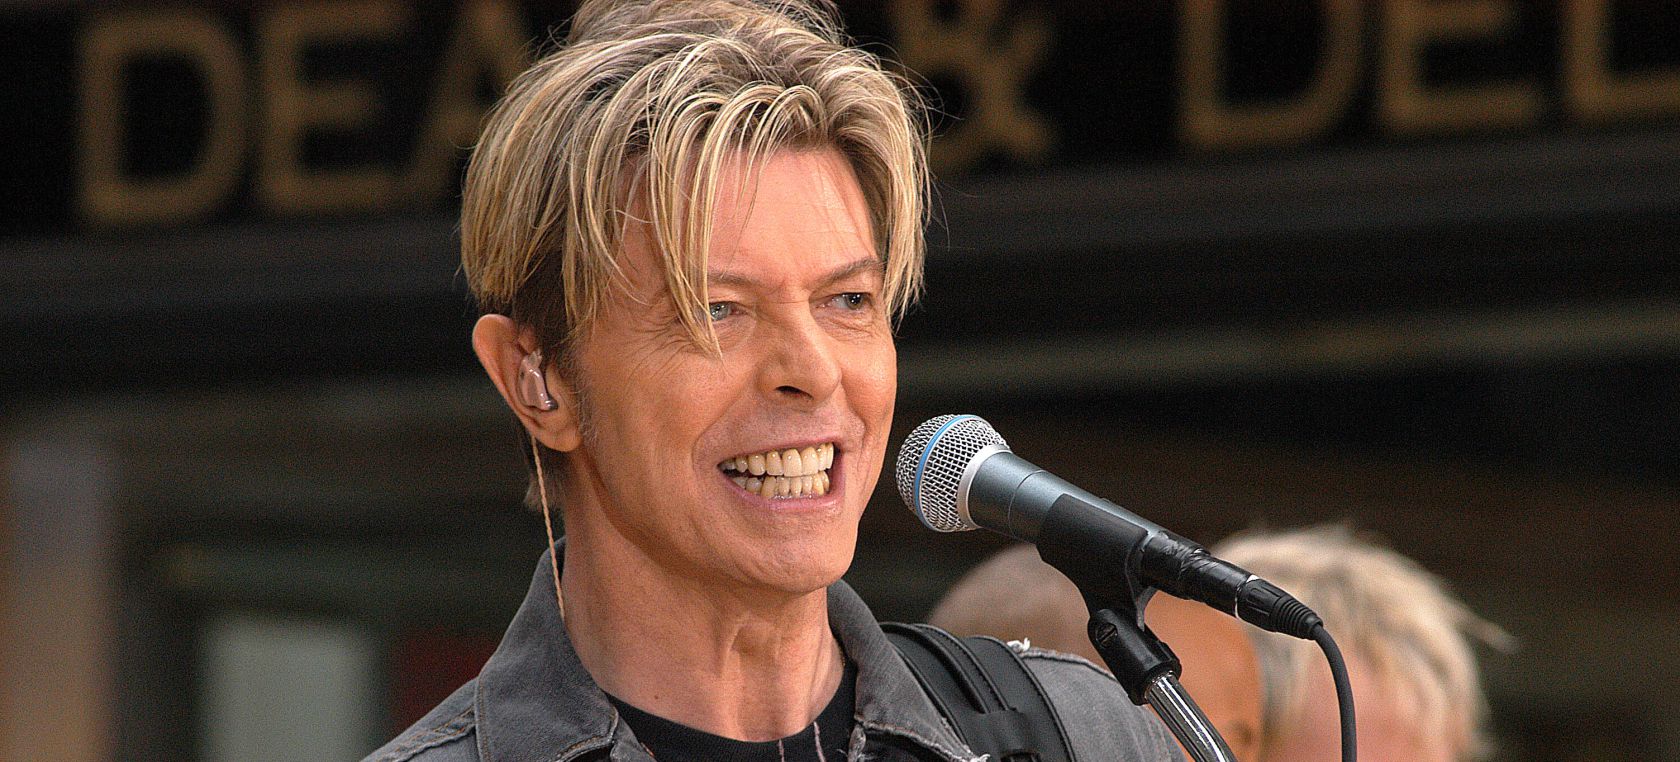 David Bowie ya tiene su propia edición especial de Monopoly